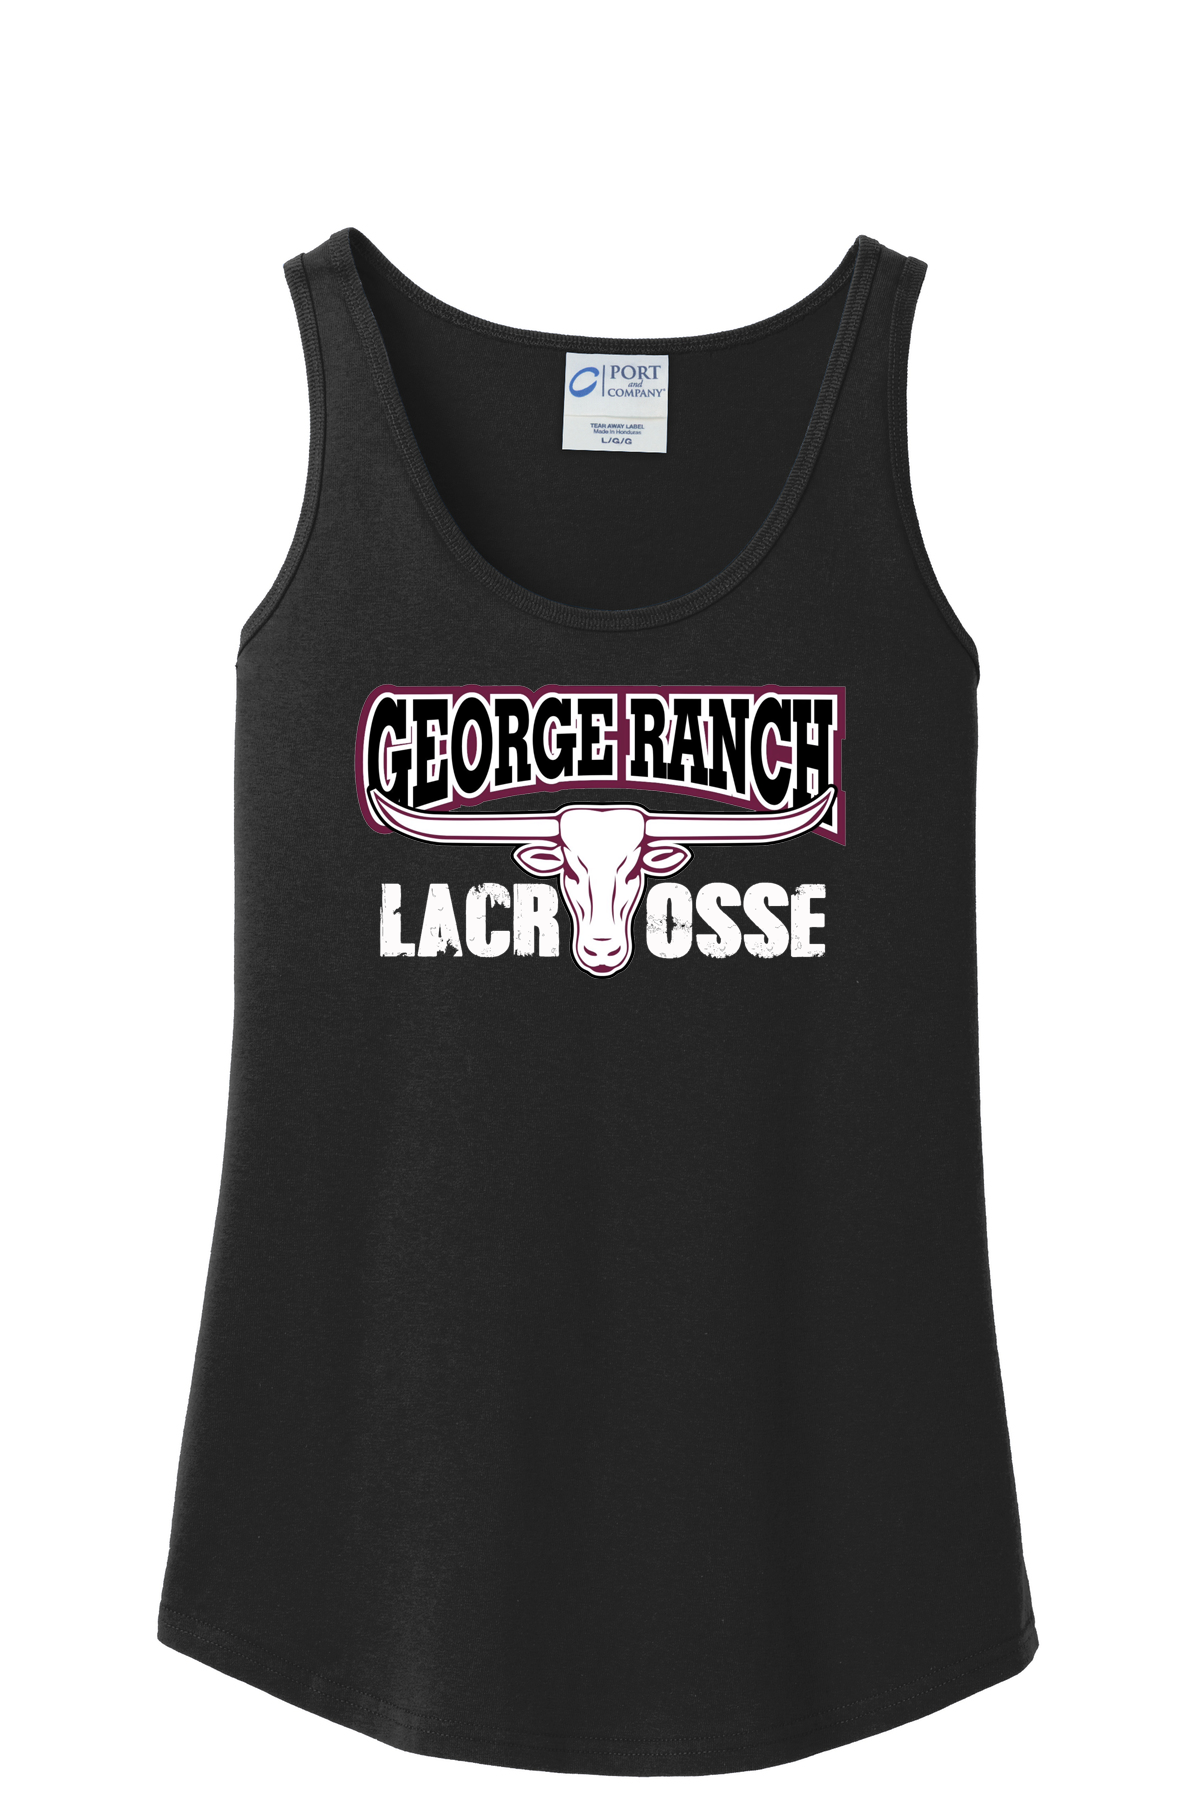 GR Longhorns Lacrosse Women's Tank Top